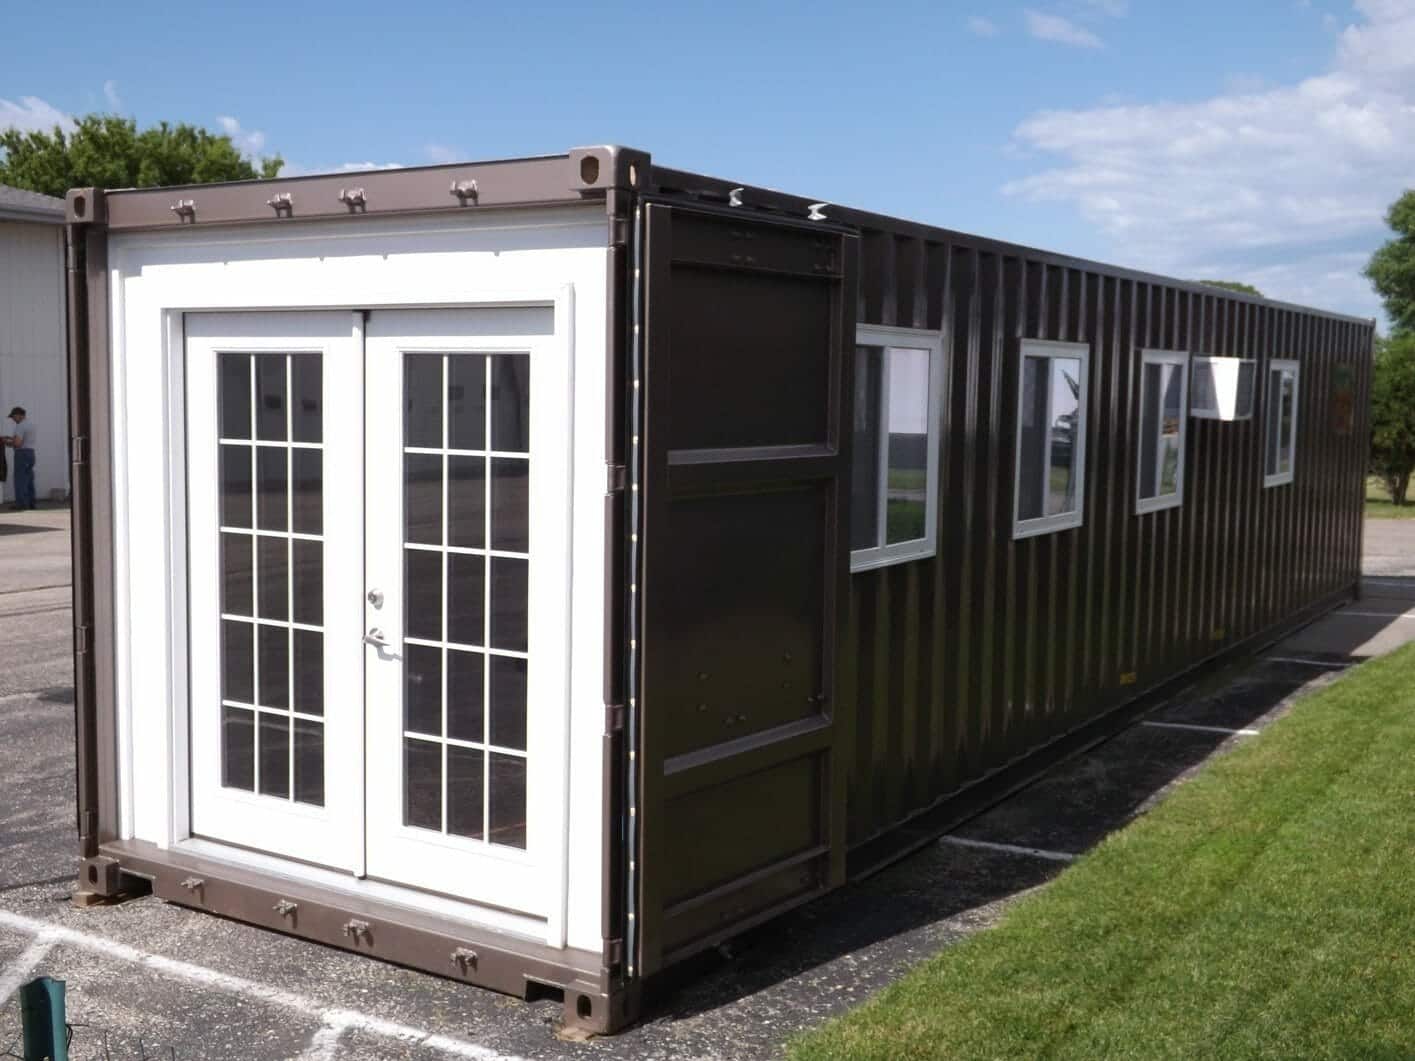 Mini domky z kontejnerů mohou sloužit jako moderní bydlení